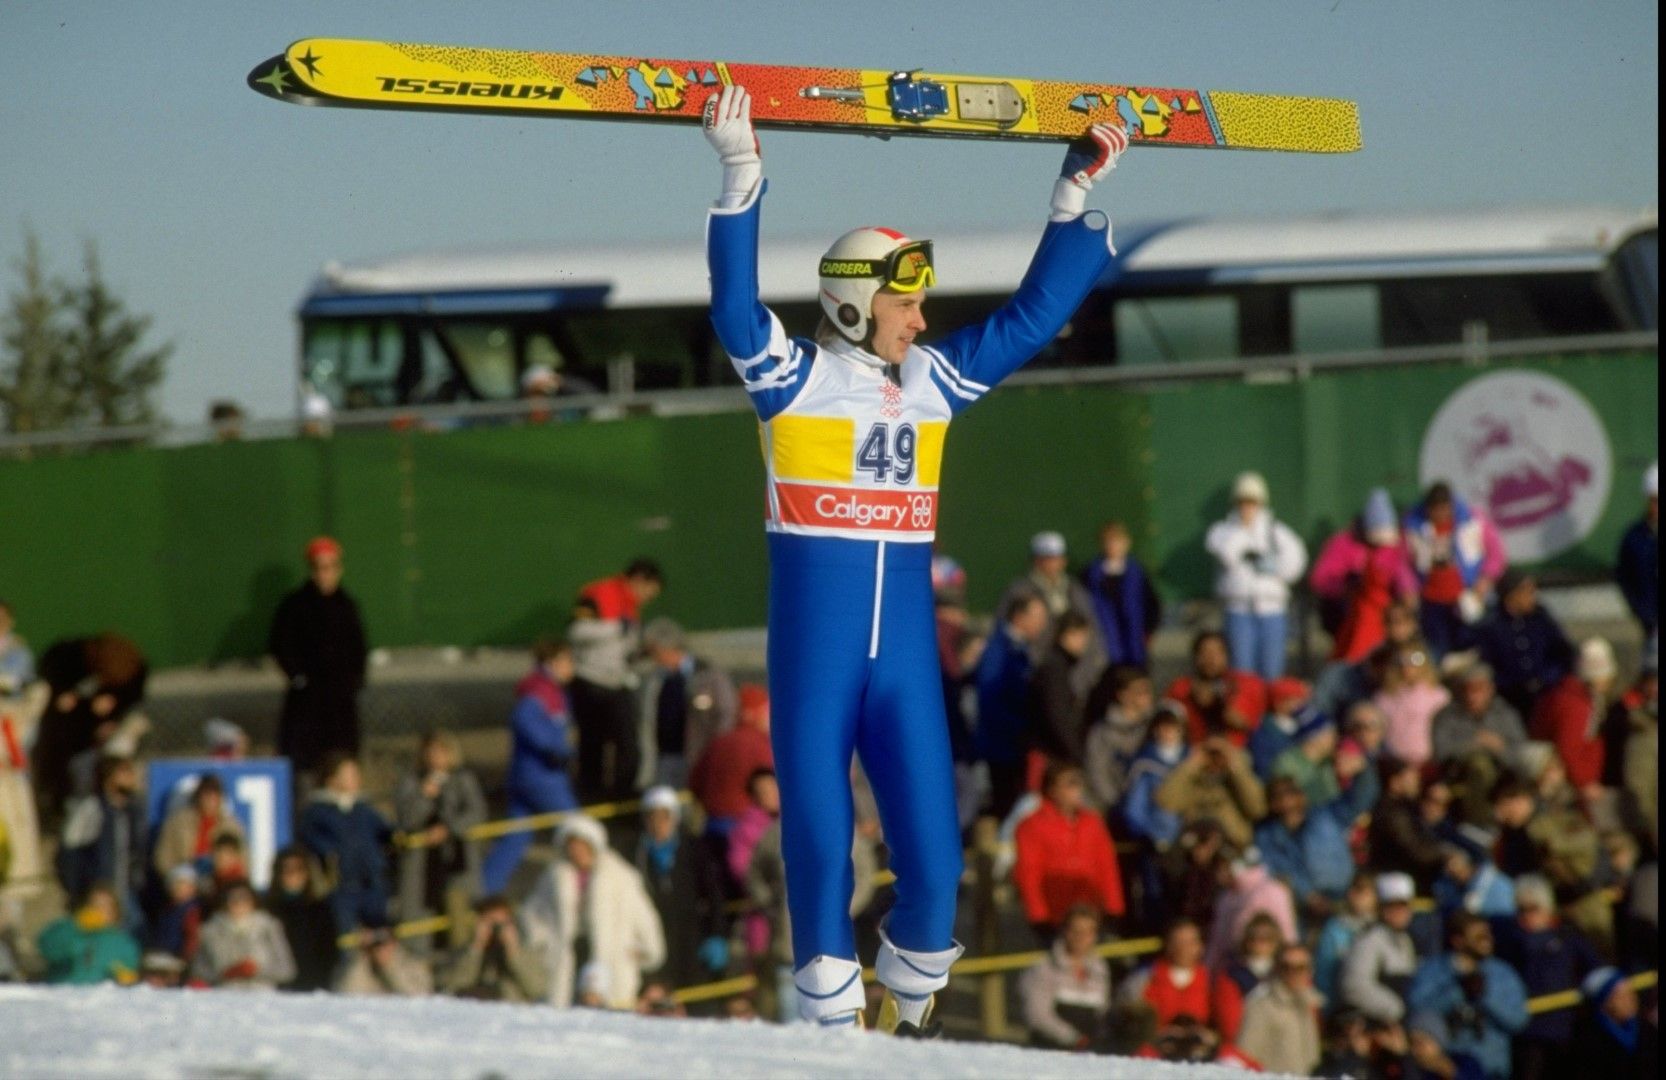 Мати Никанен (1963-2019) определян е като най-великия ски-скачач в историята. Финалндецът печели 4 олимпийски титли, но животът му далеч от шанцата е изпъстрен с непрестанни скандали свързани с алкохол и насилие.